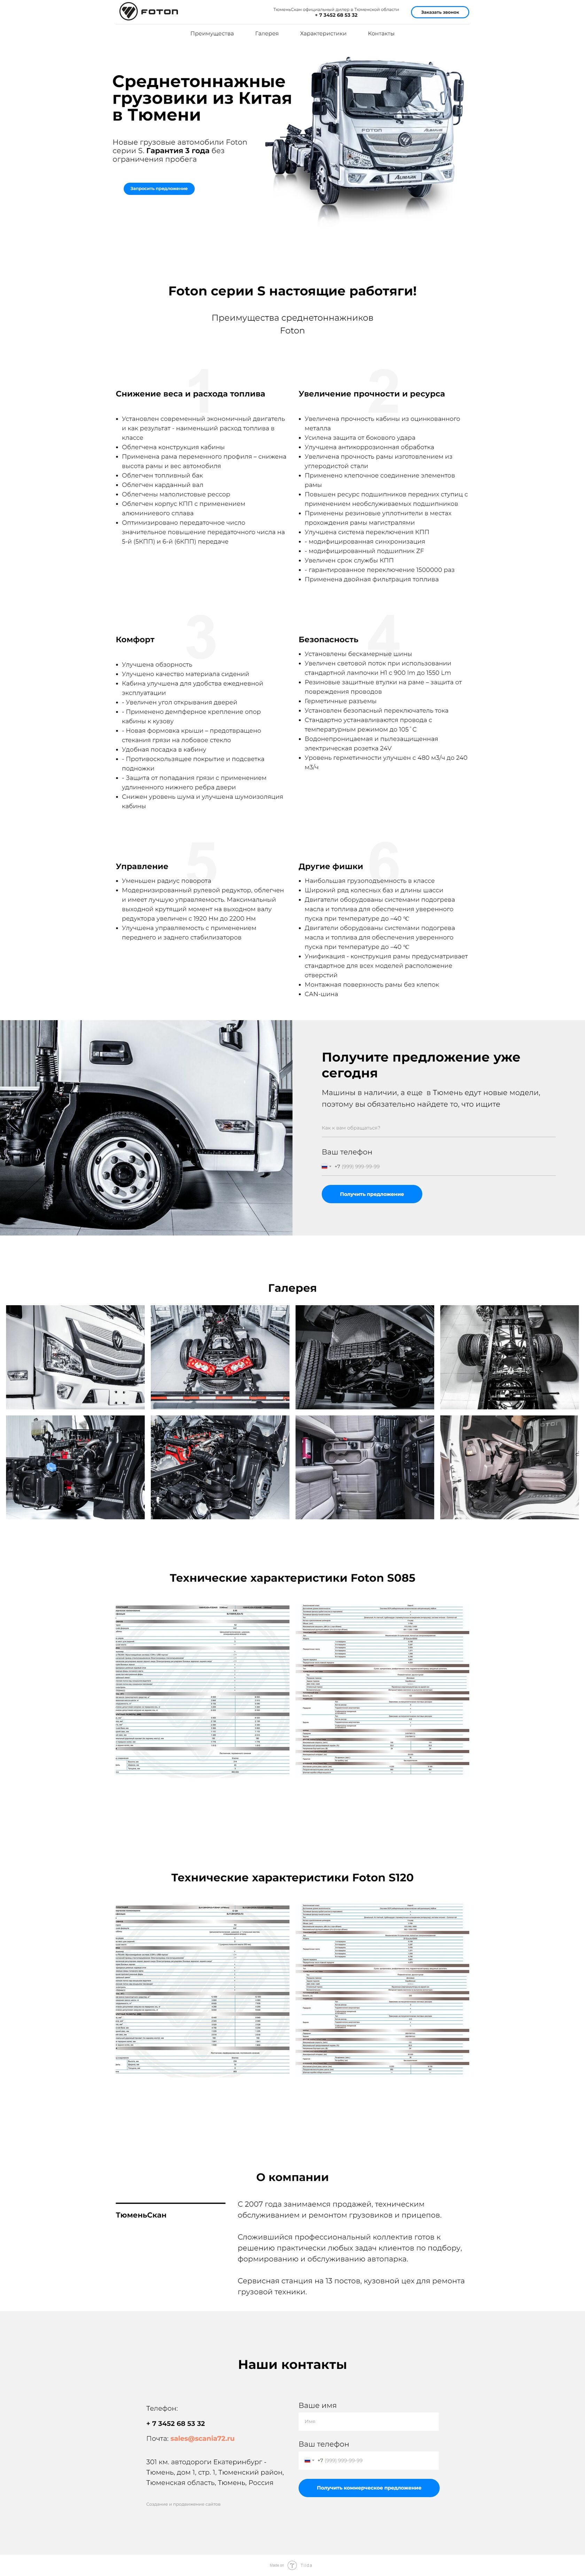 пример сайт-лендинг для компании по продаже грузовиков